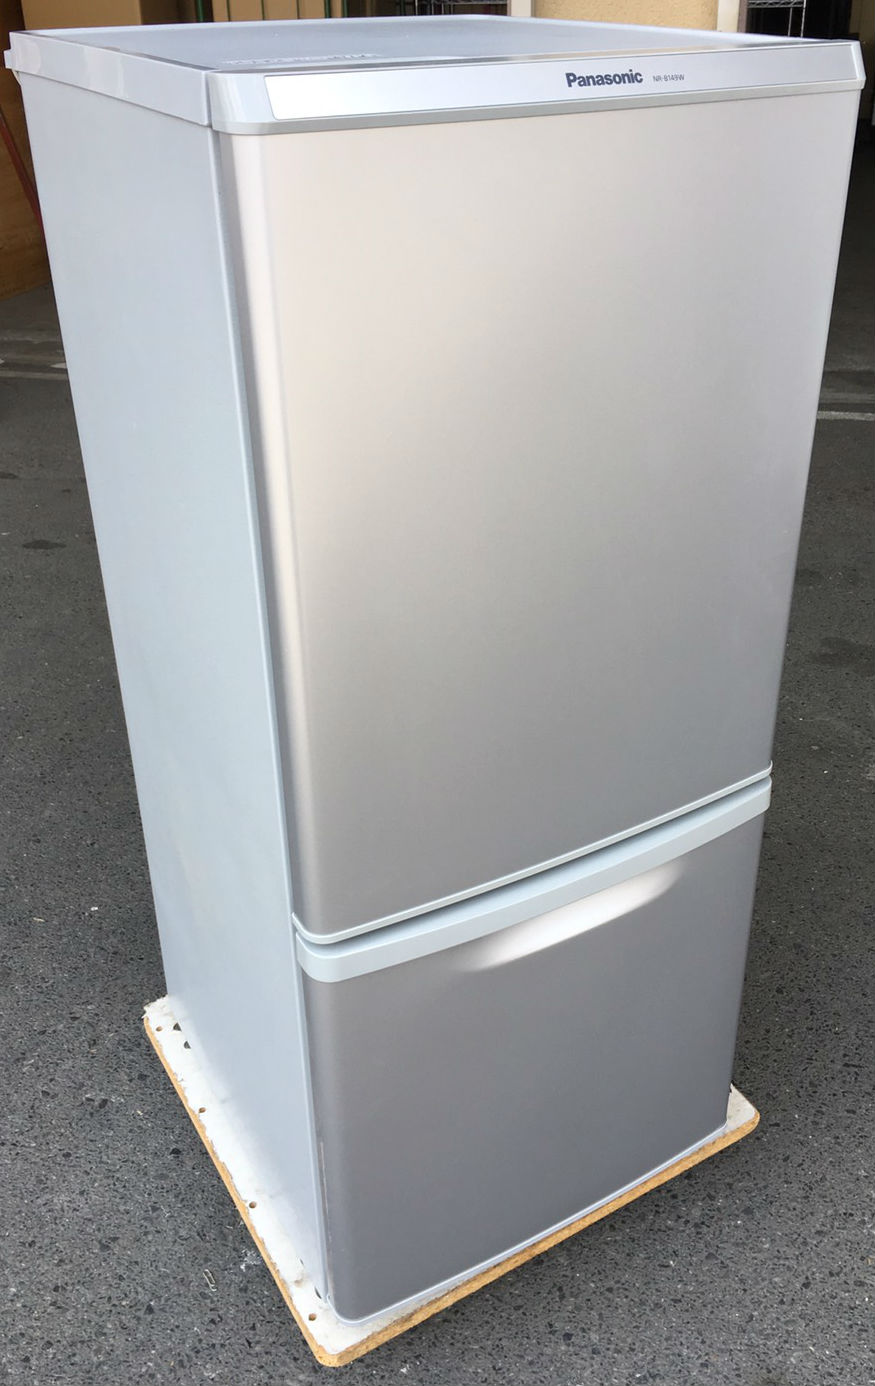 パナソニック製の冷凍冷蔵庫